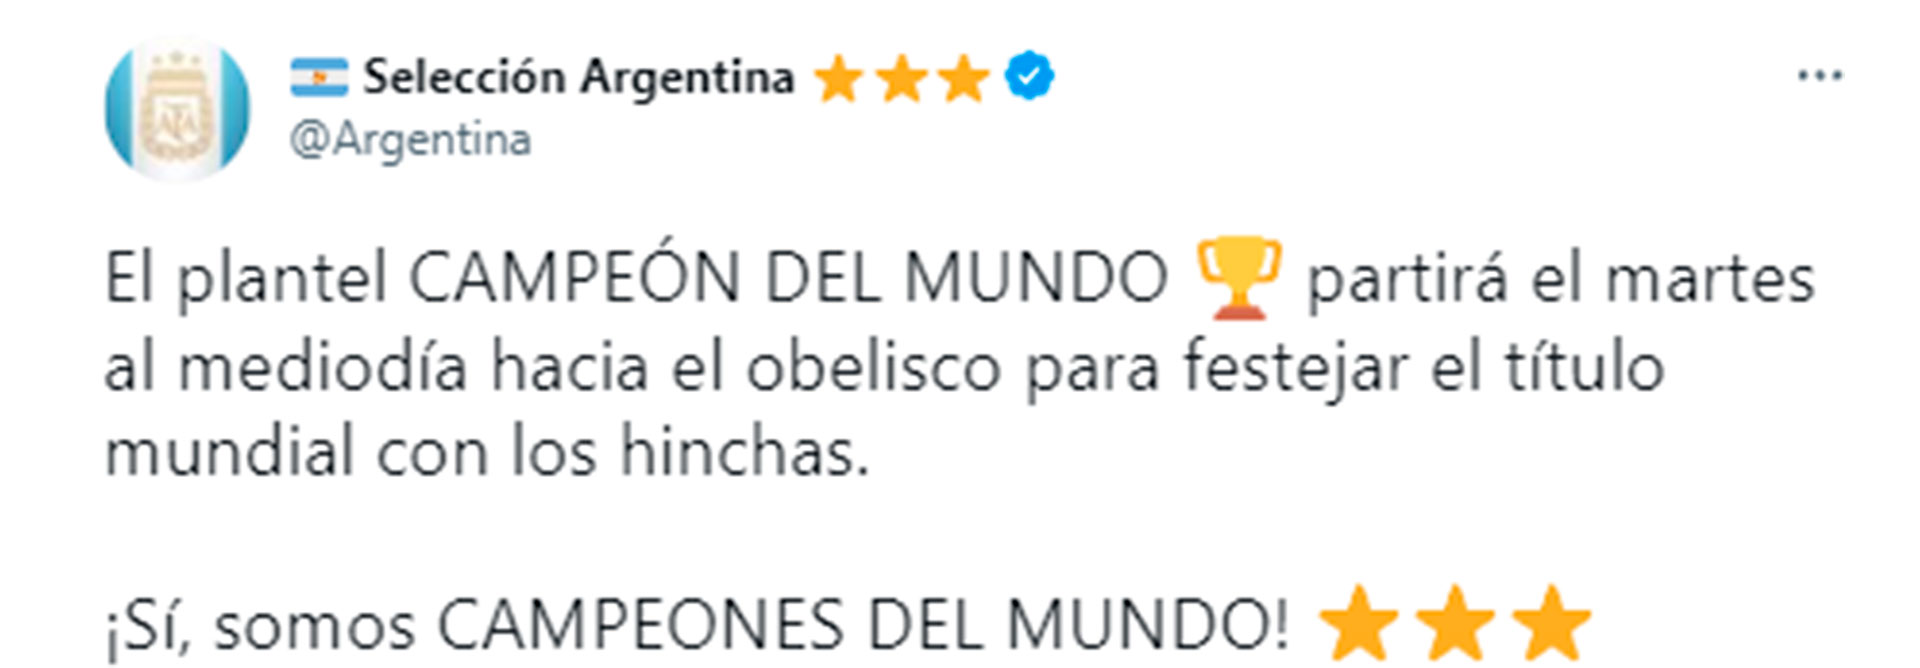 El anuncio desde la cuenta de la selección argentina con la caravana al Obelisco